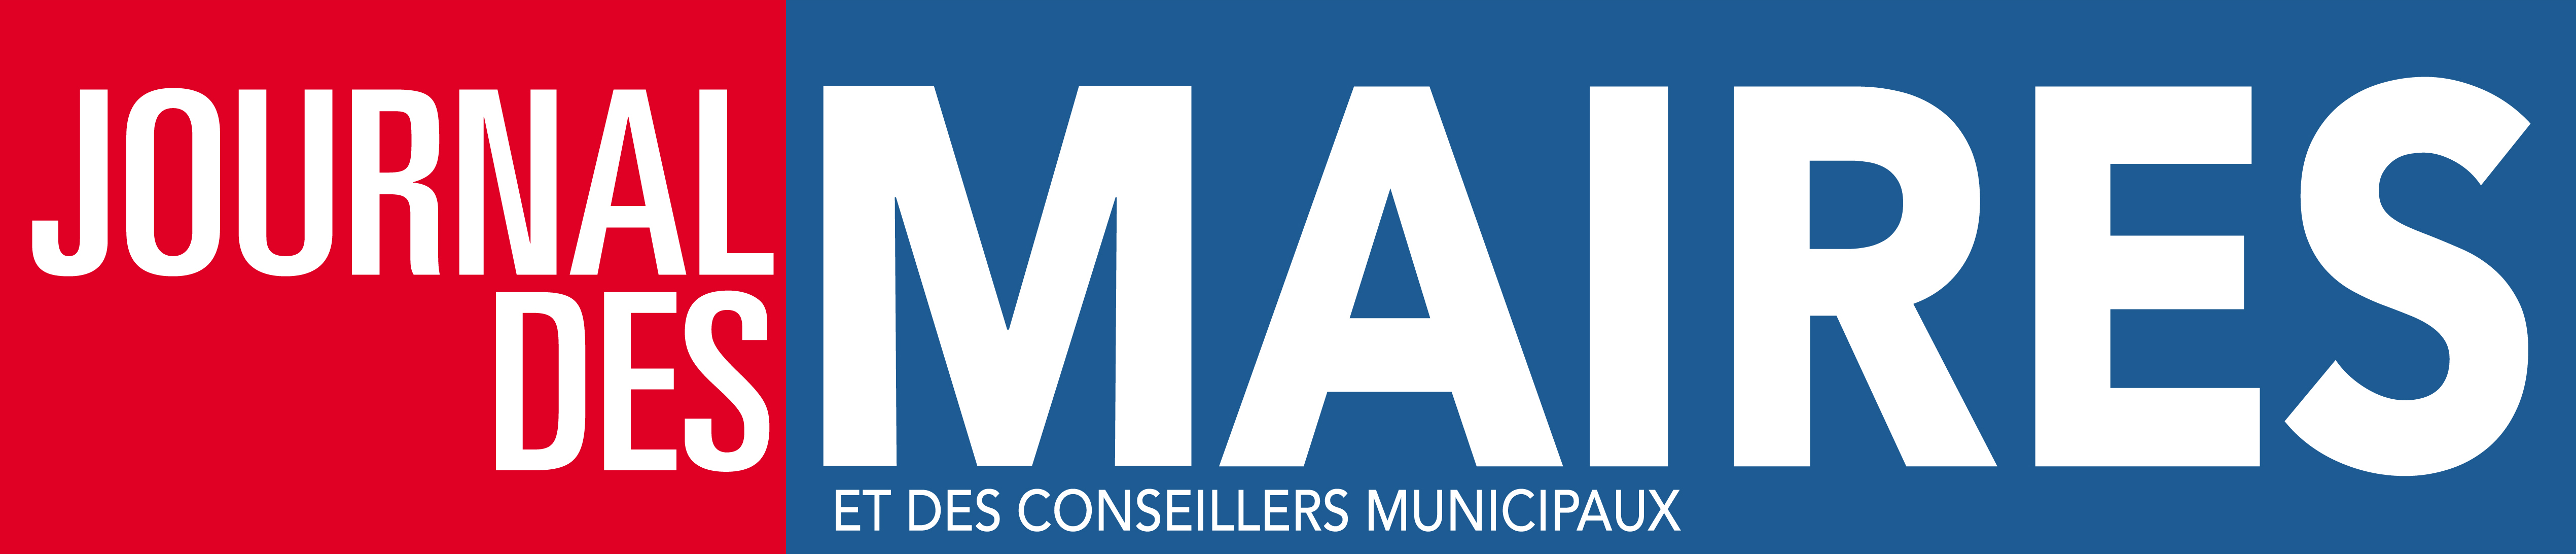 Créé en 1857, le Journal des Maires est aujourd'hui reconnu comme le mensuel de référence des décideurs locaux. Indépendant des pouvoirs politiques et des entreprises, il vit grâce à la confiance et la fidélité de ses abonnés.